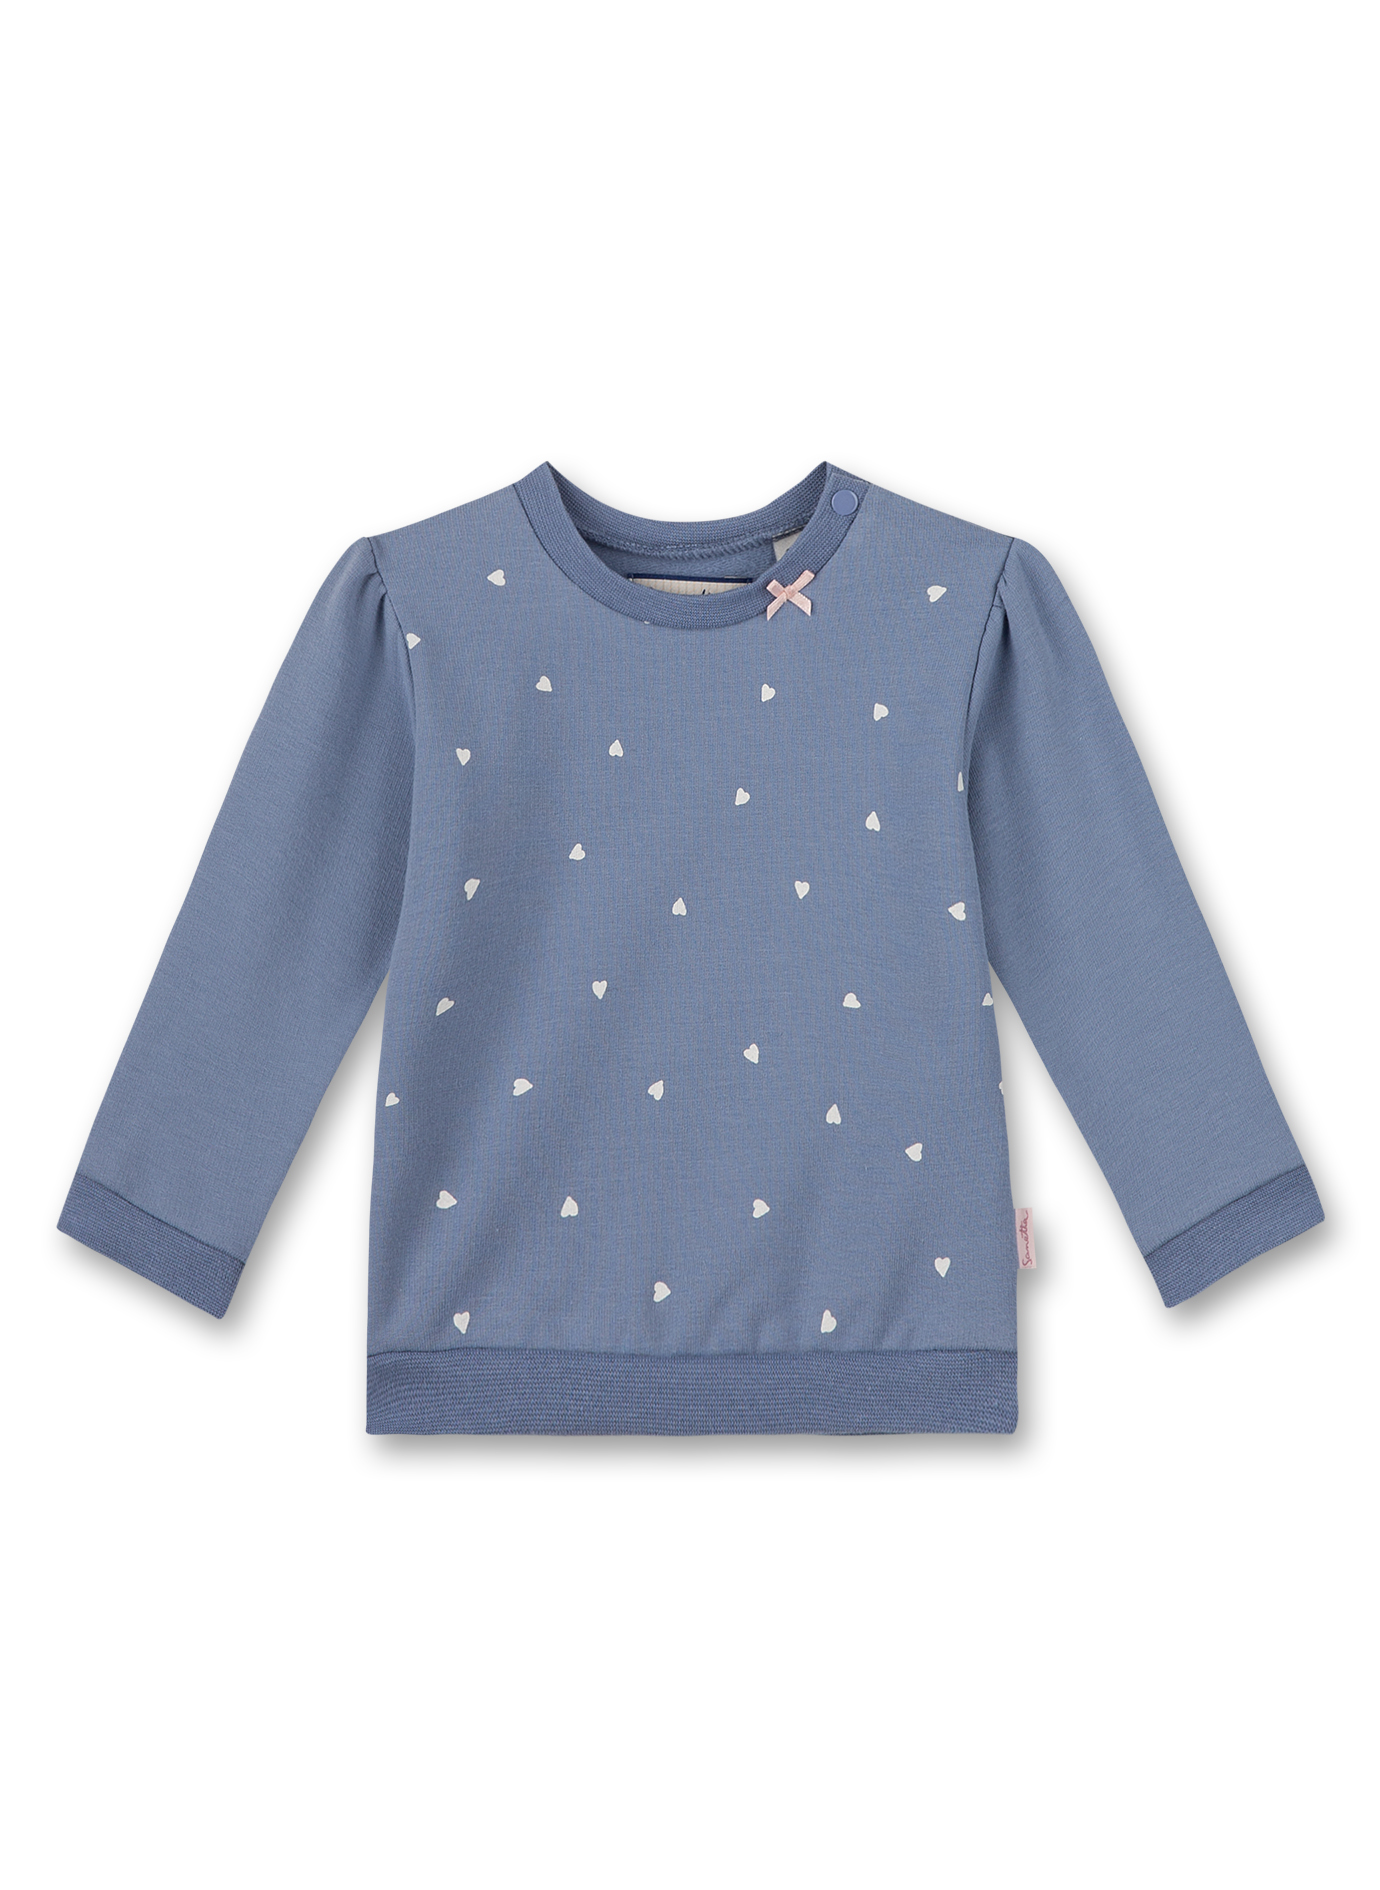 Mädchen-Sweatshirt Blau Little Spikes